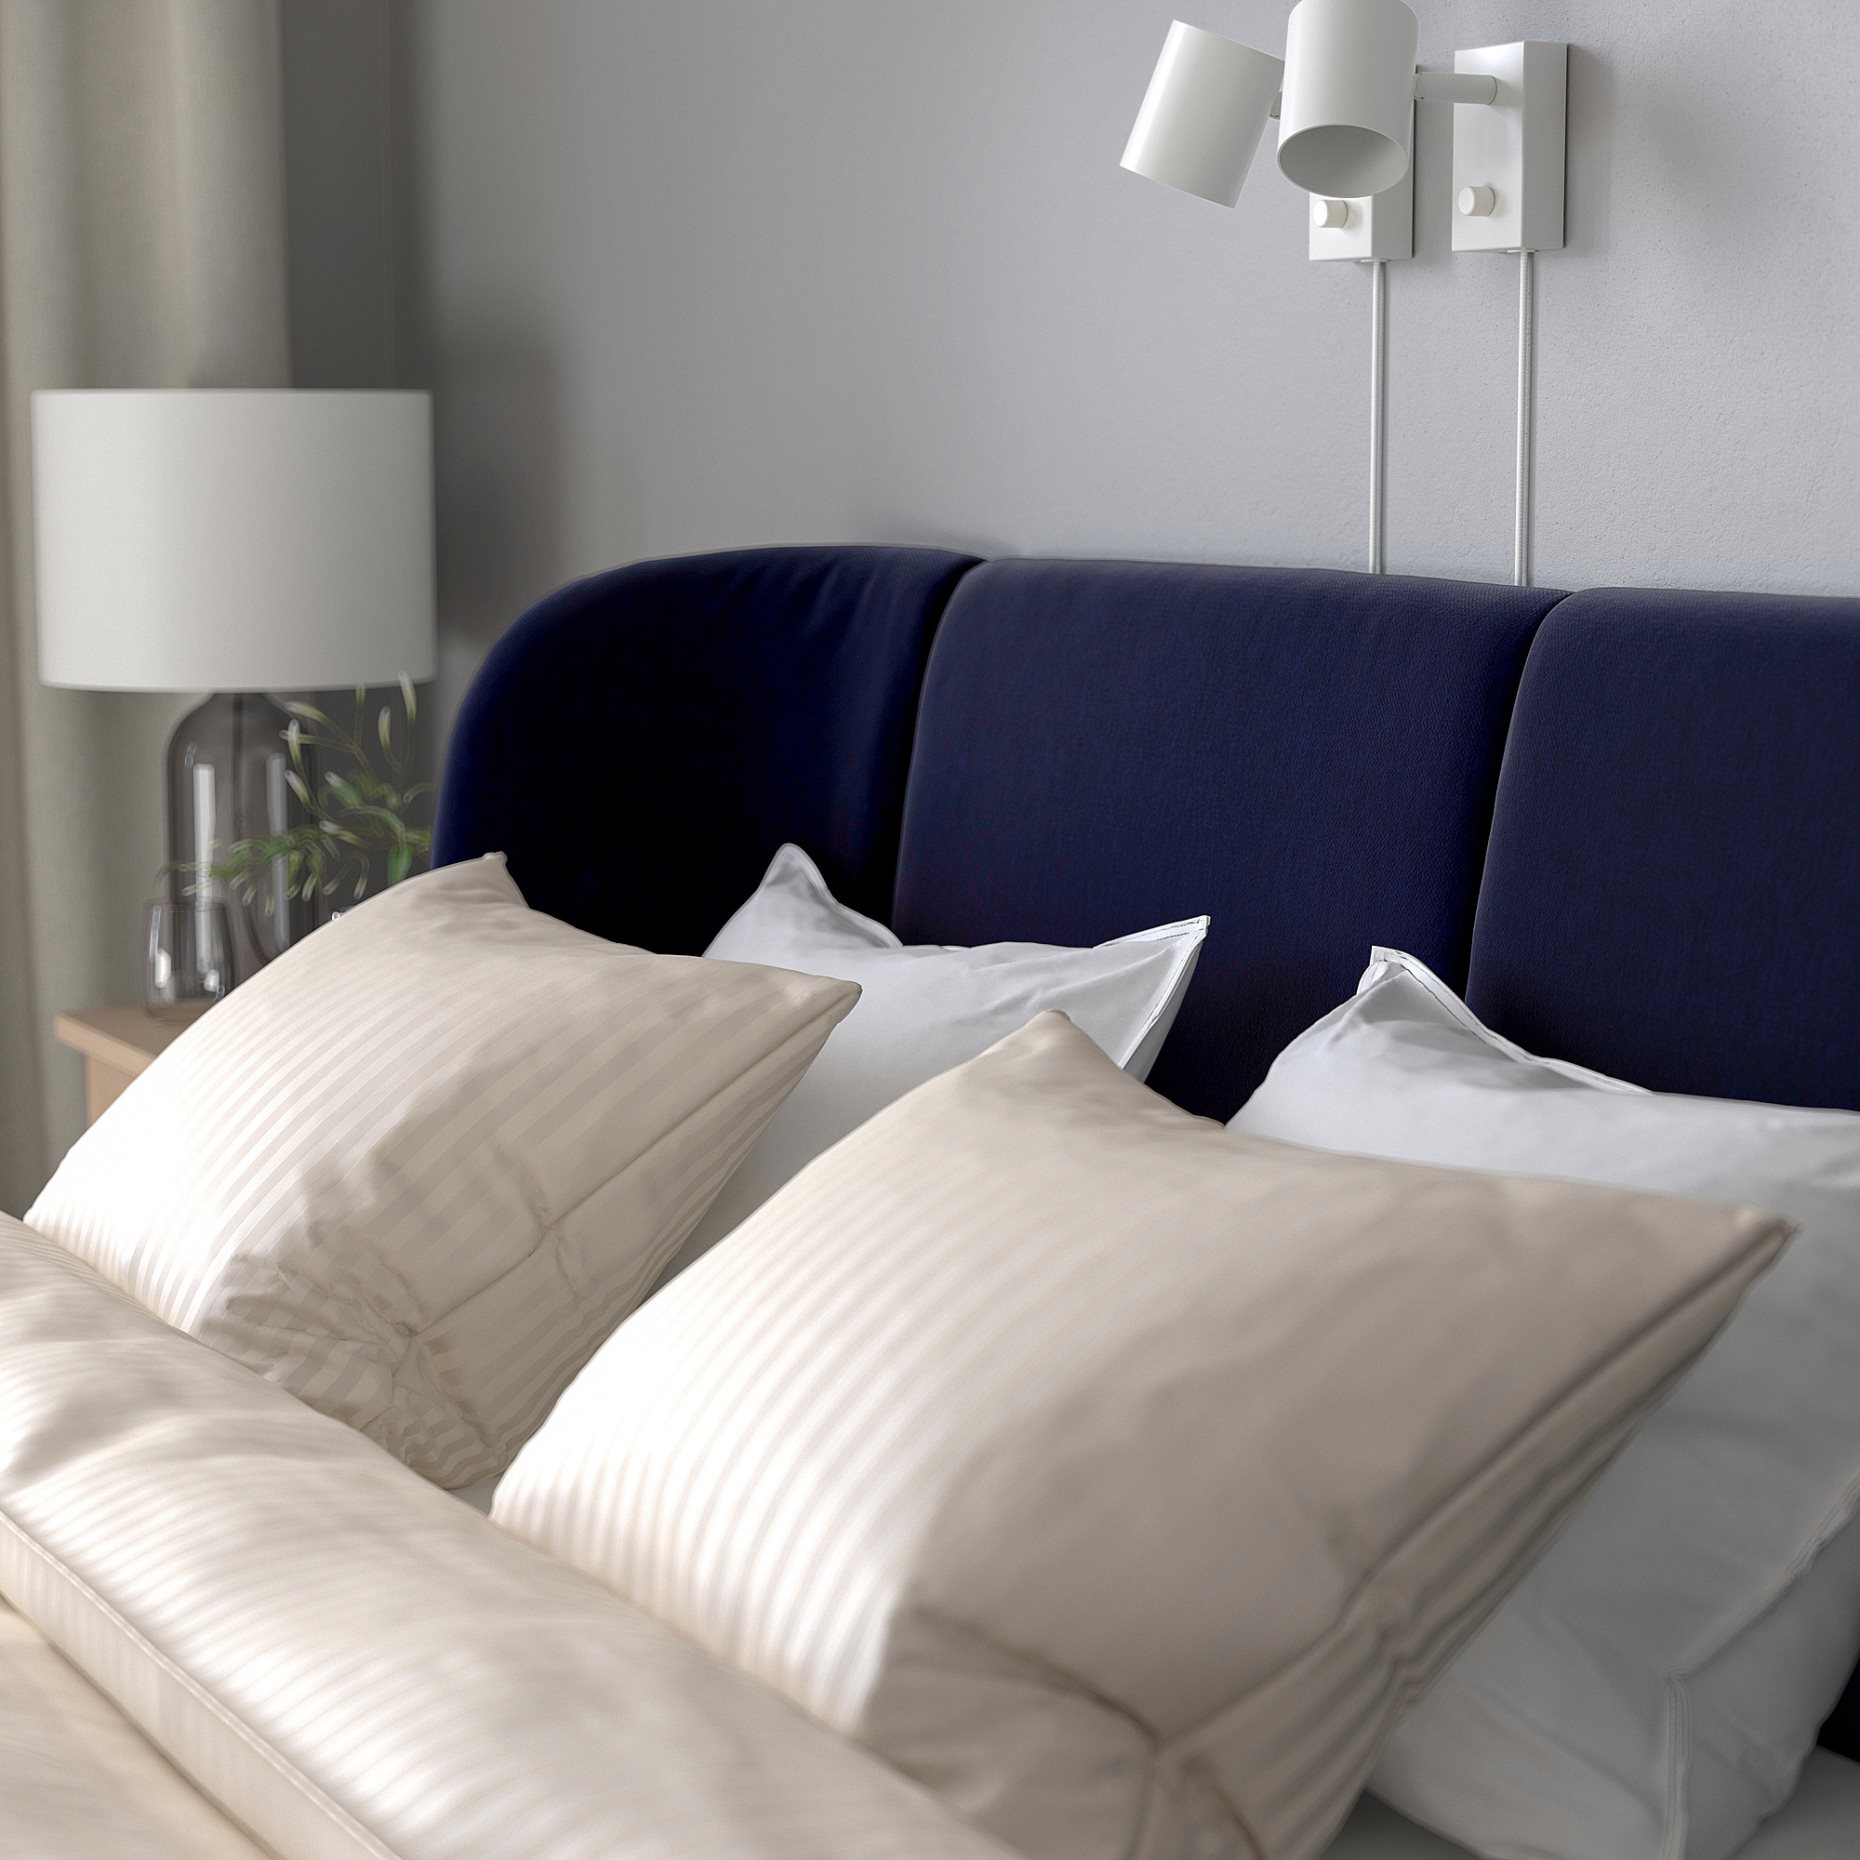 TUFJORD, upholstered bed frame, 160x200 cm, 495.553.38